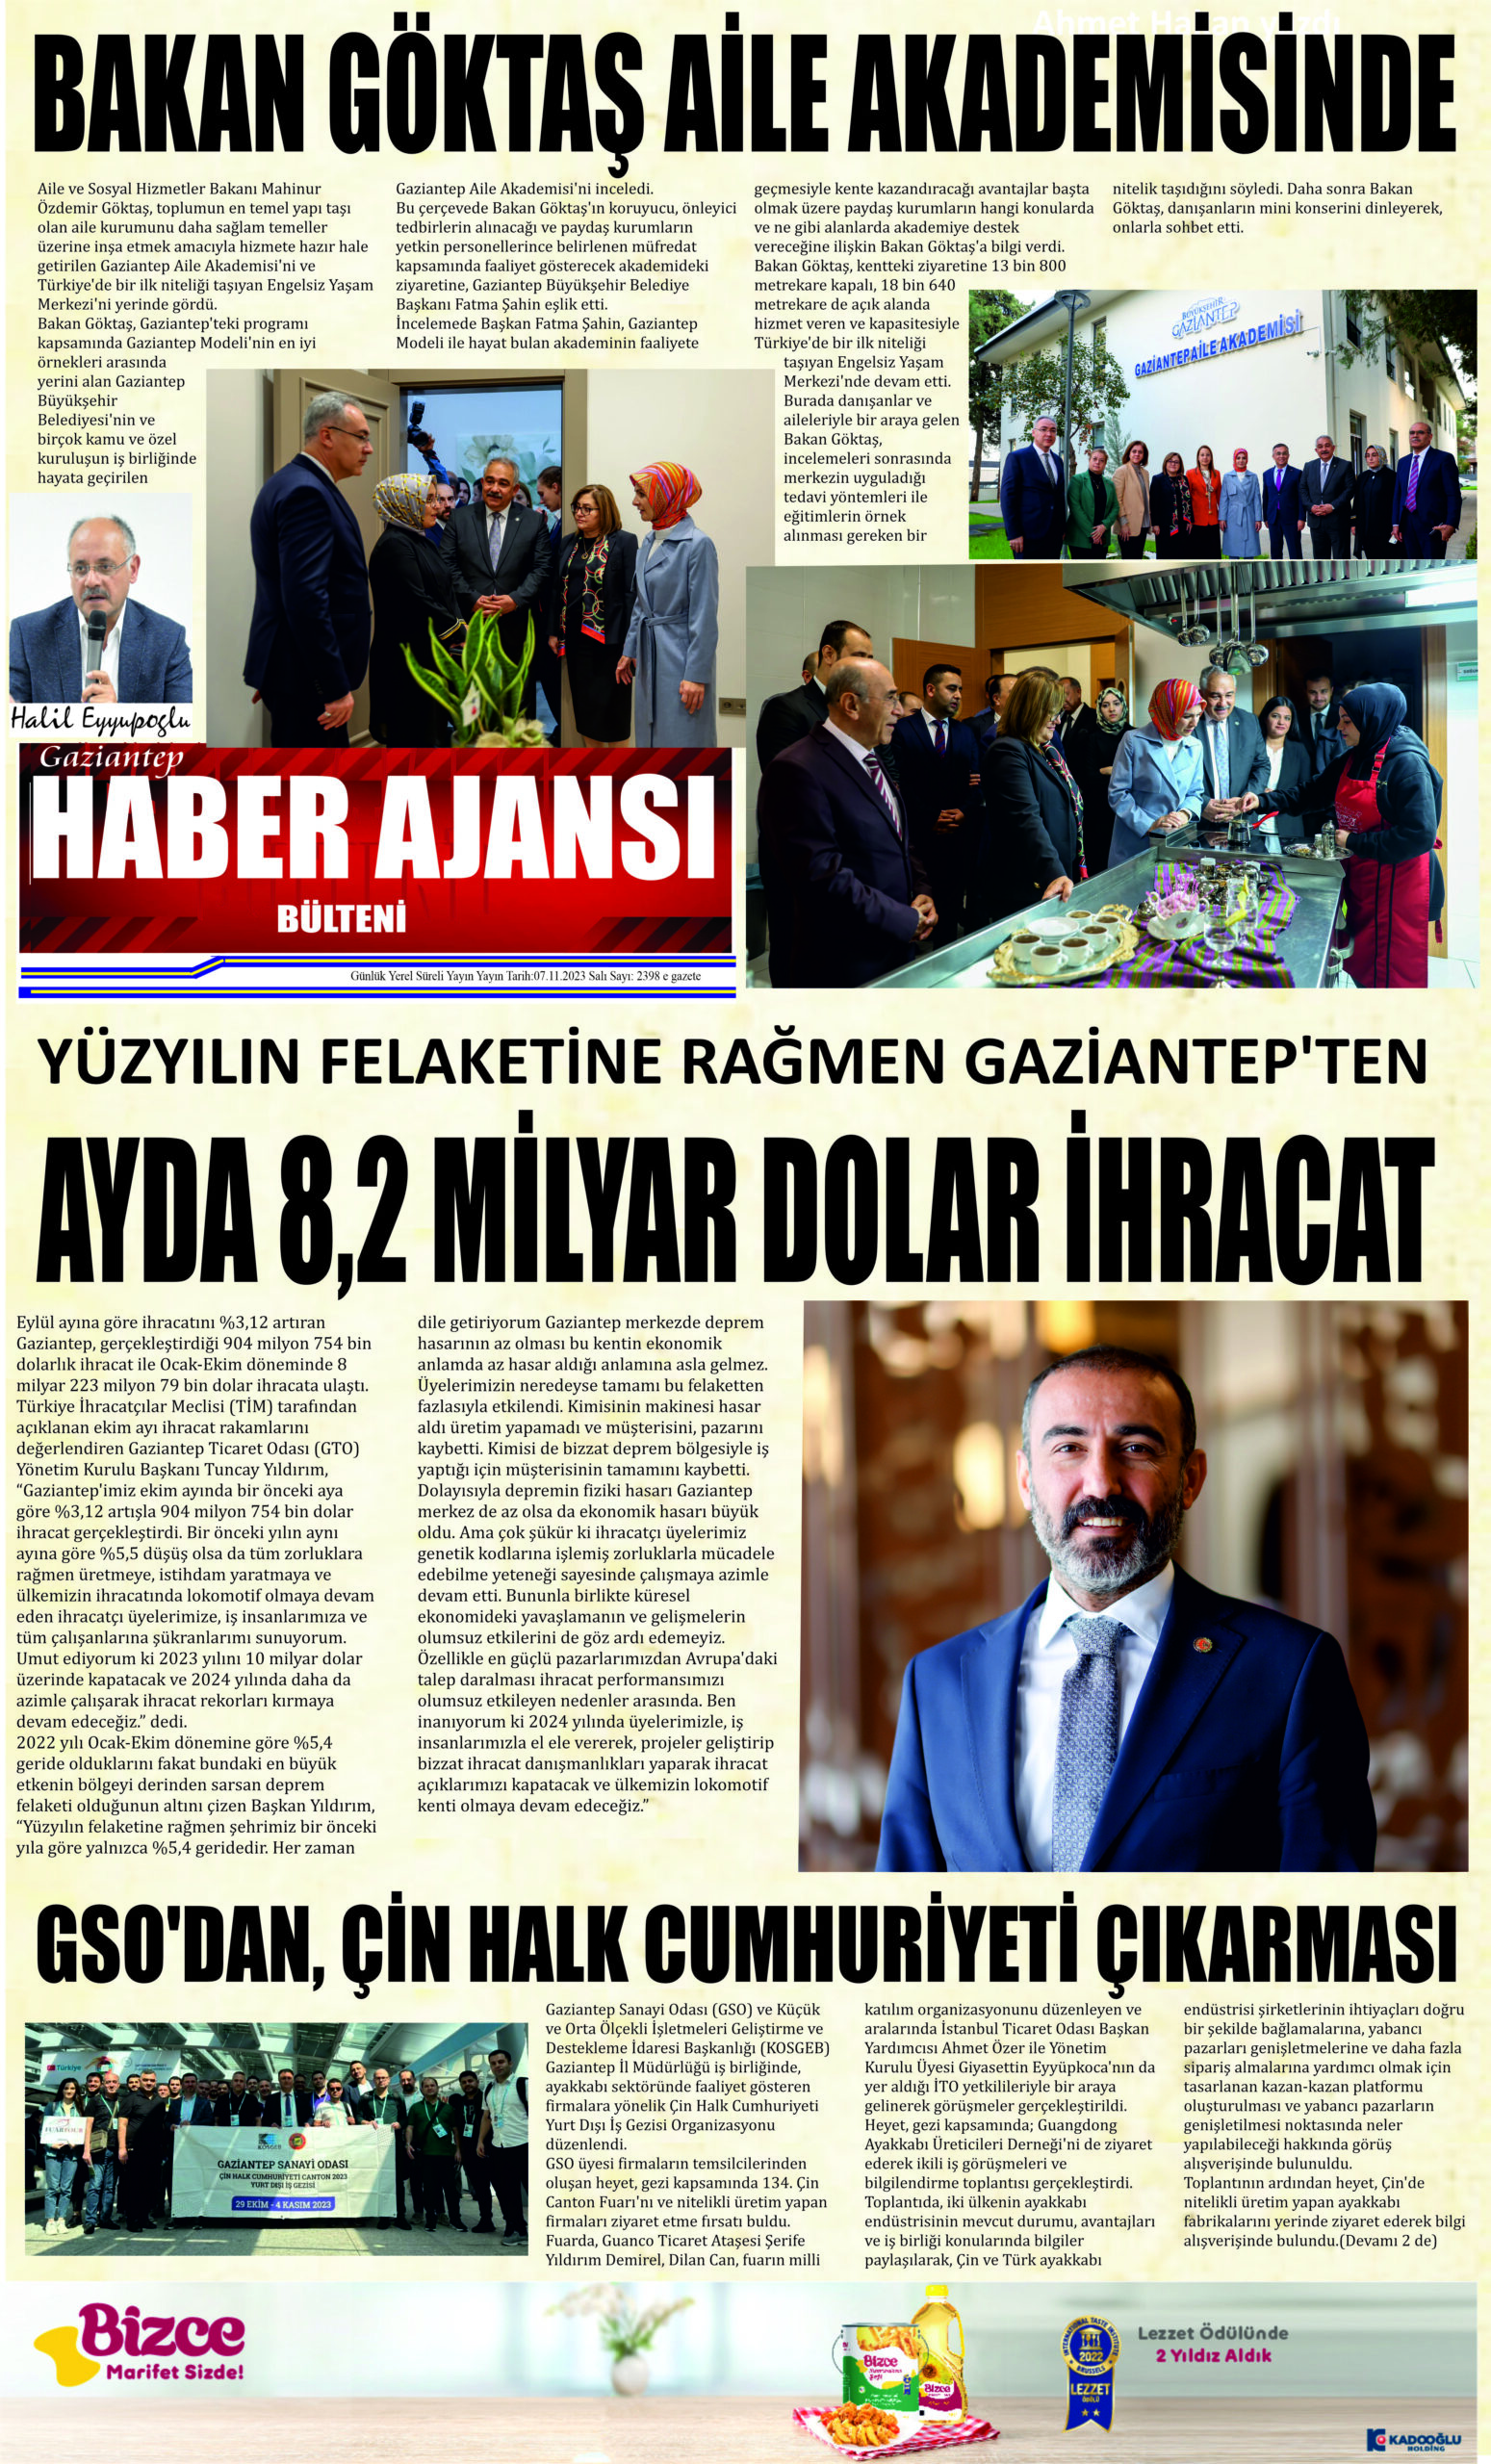 Gaziantep Haber Ajansı Bülteni Salı 07.11.2023 e gazete